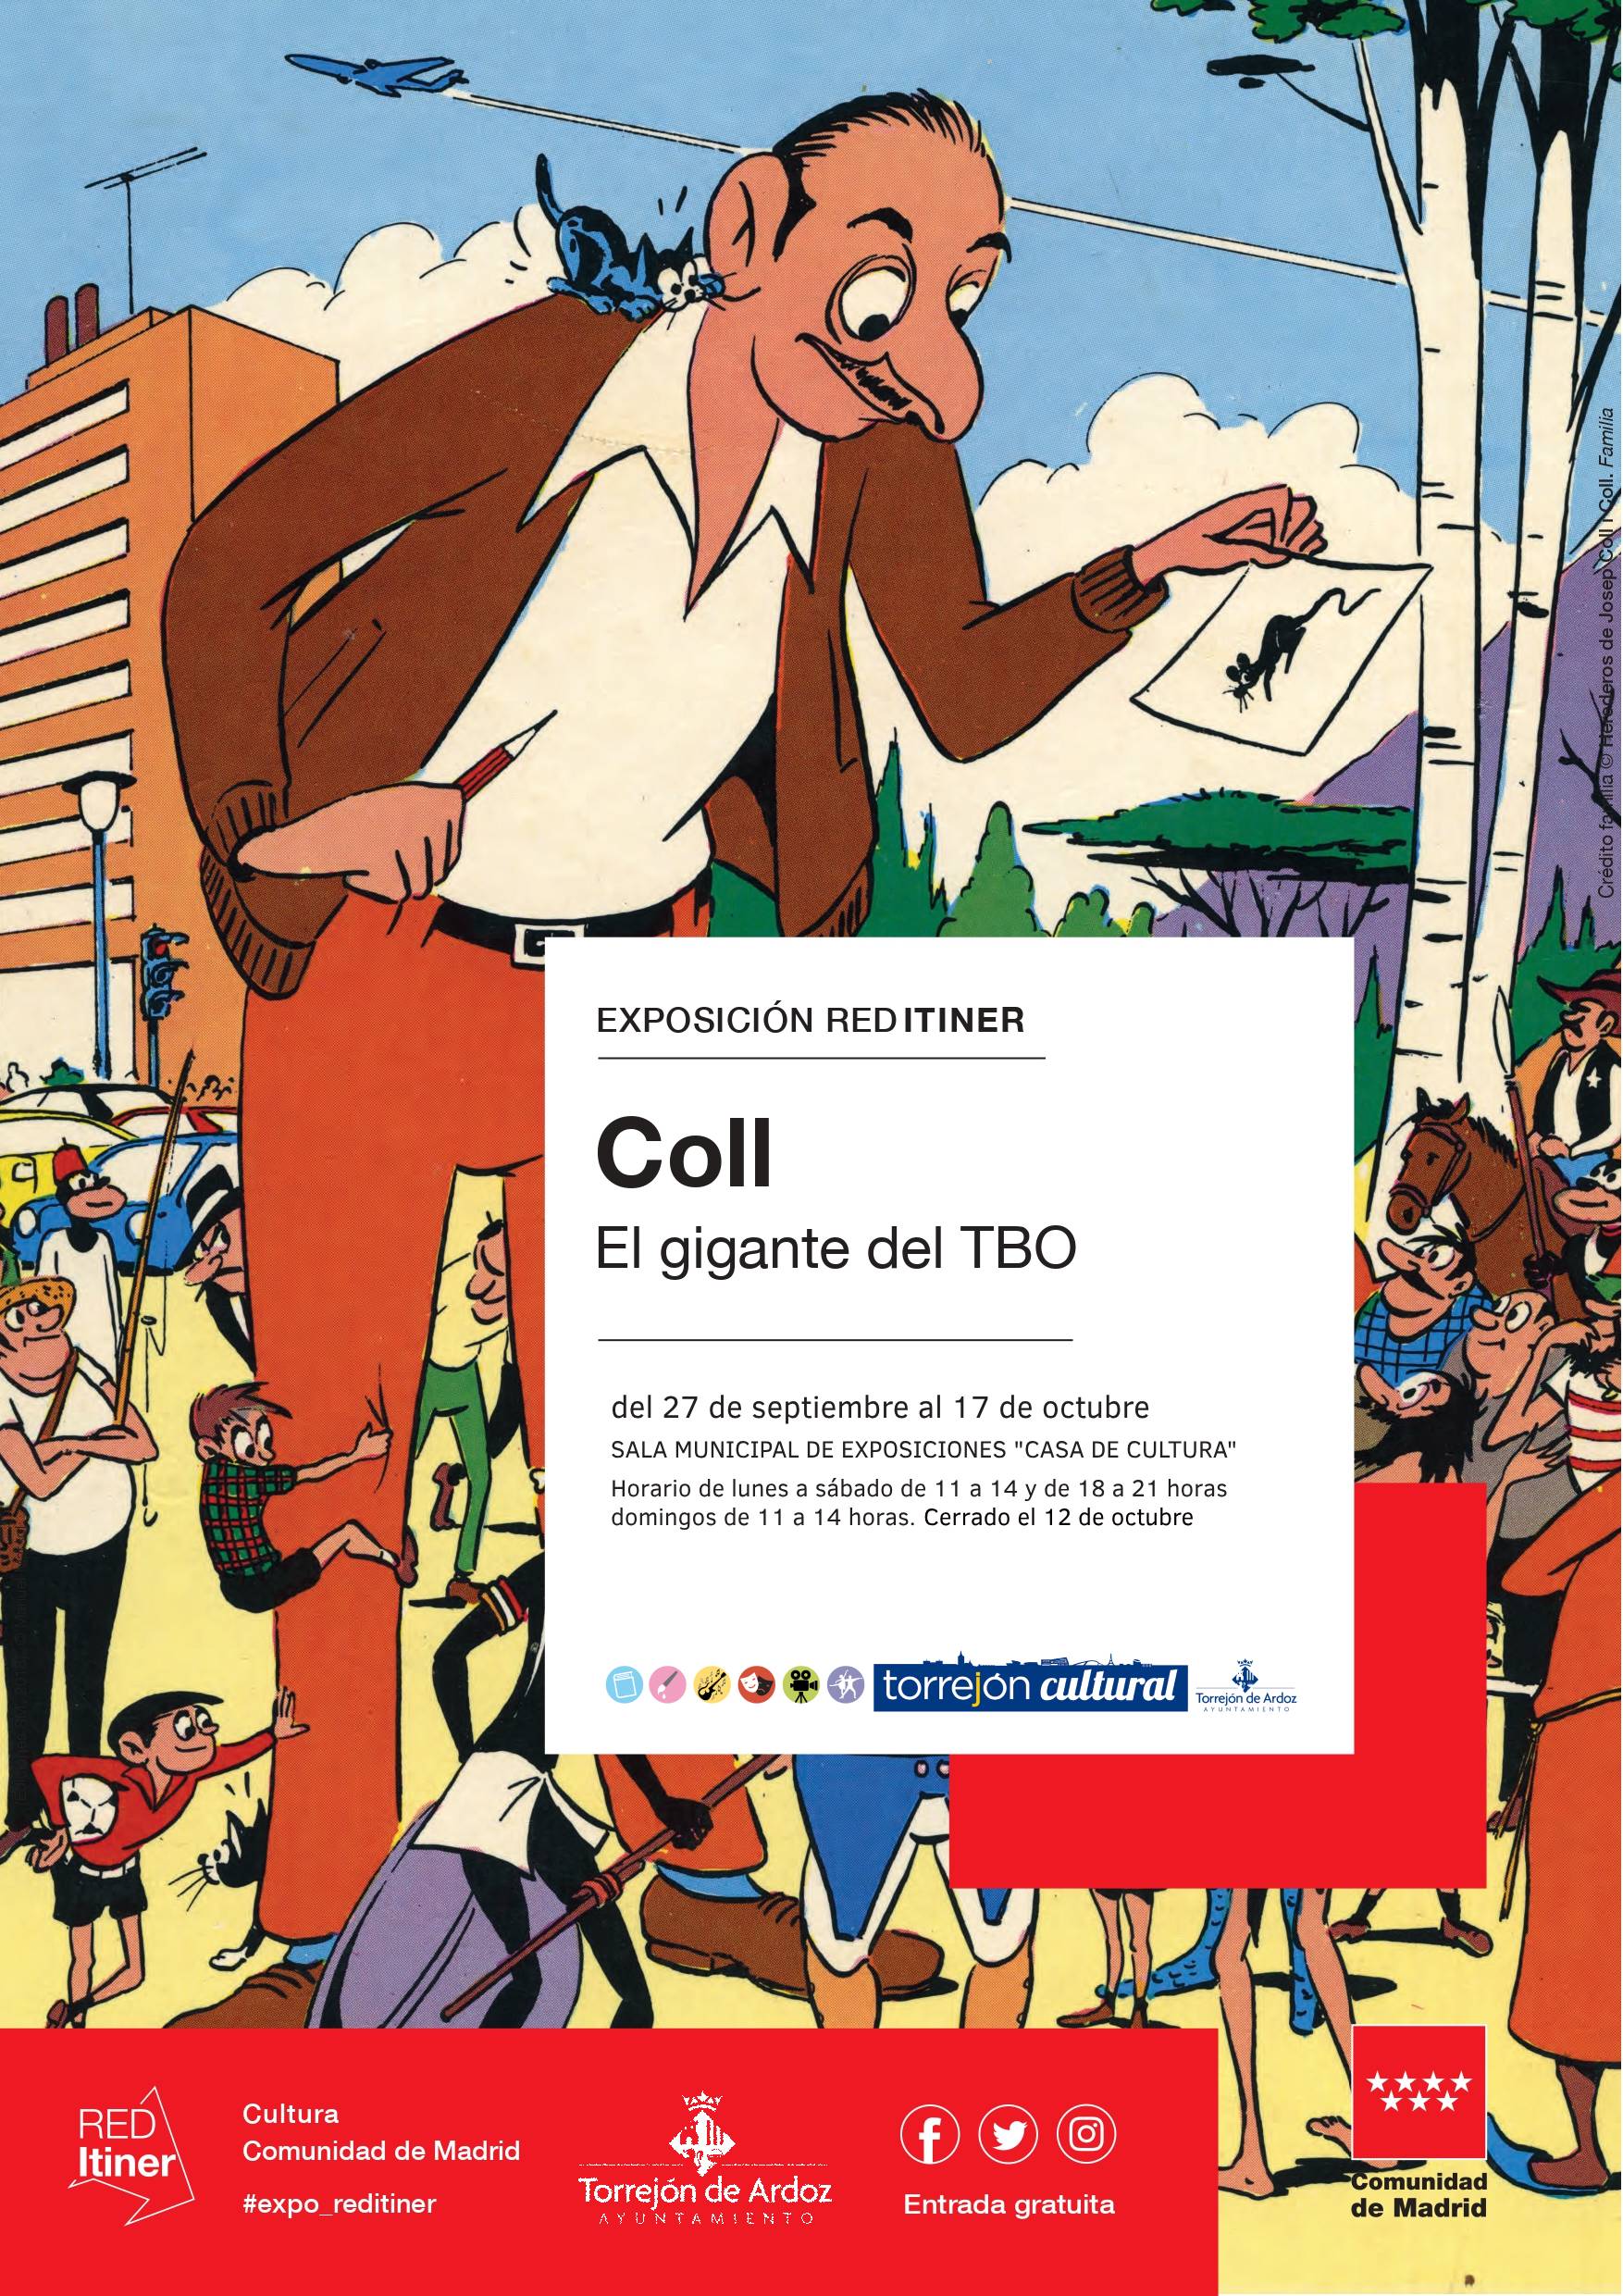 Exposición "Coll: El gigante del TBO"